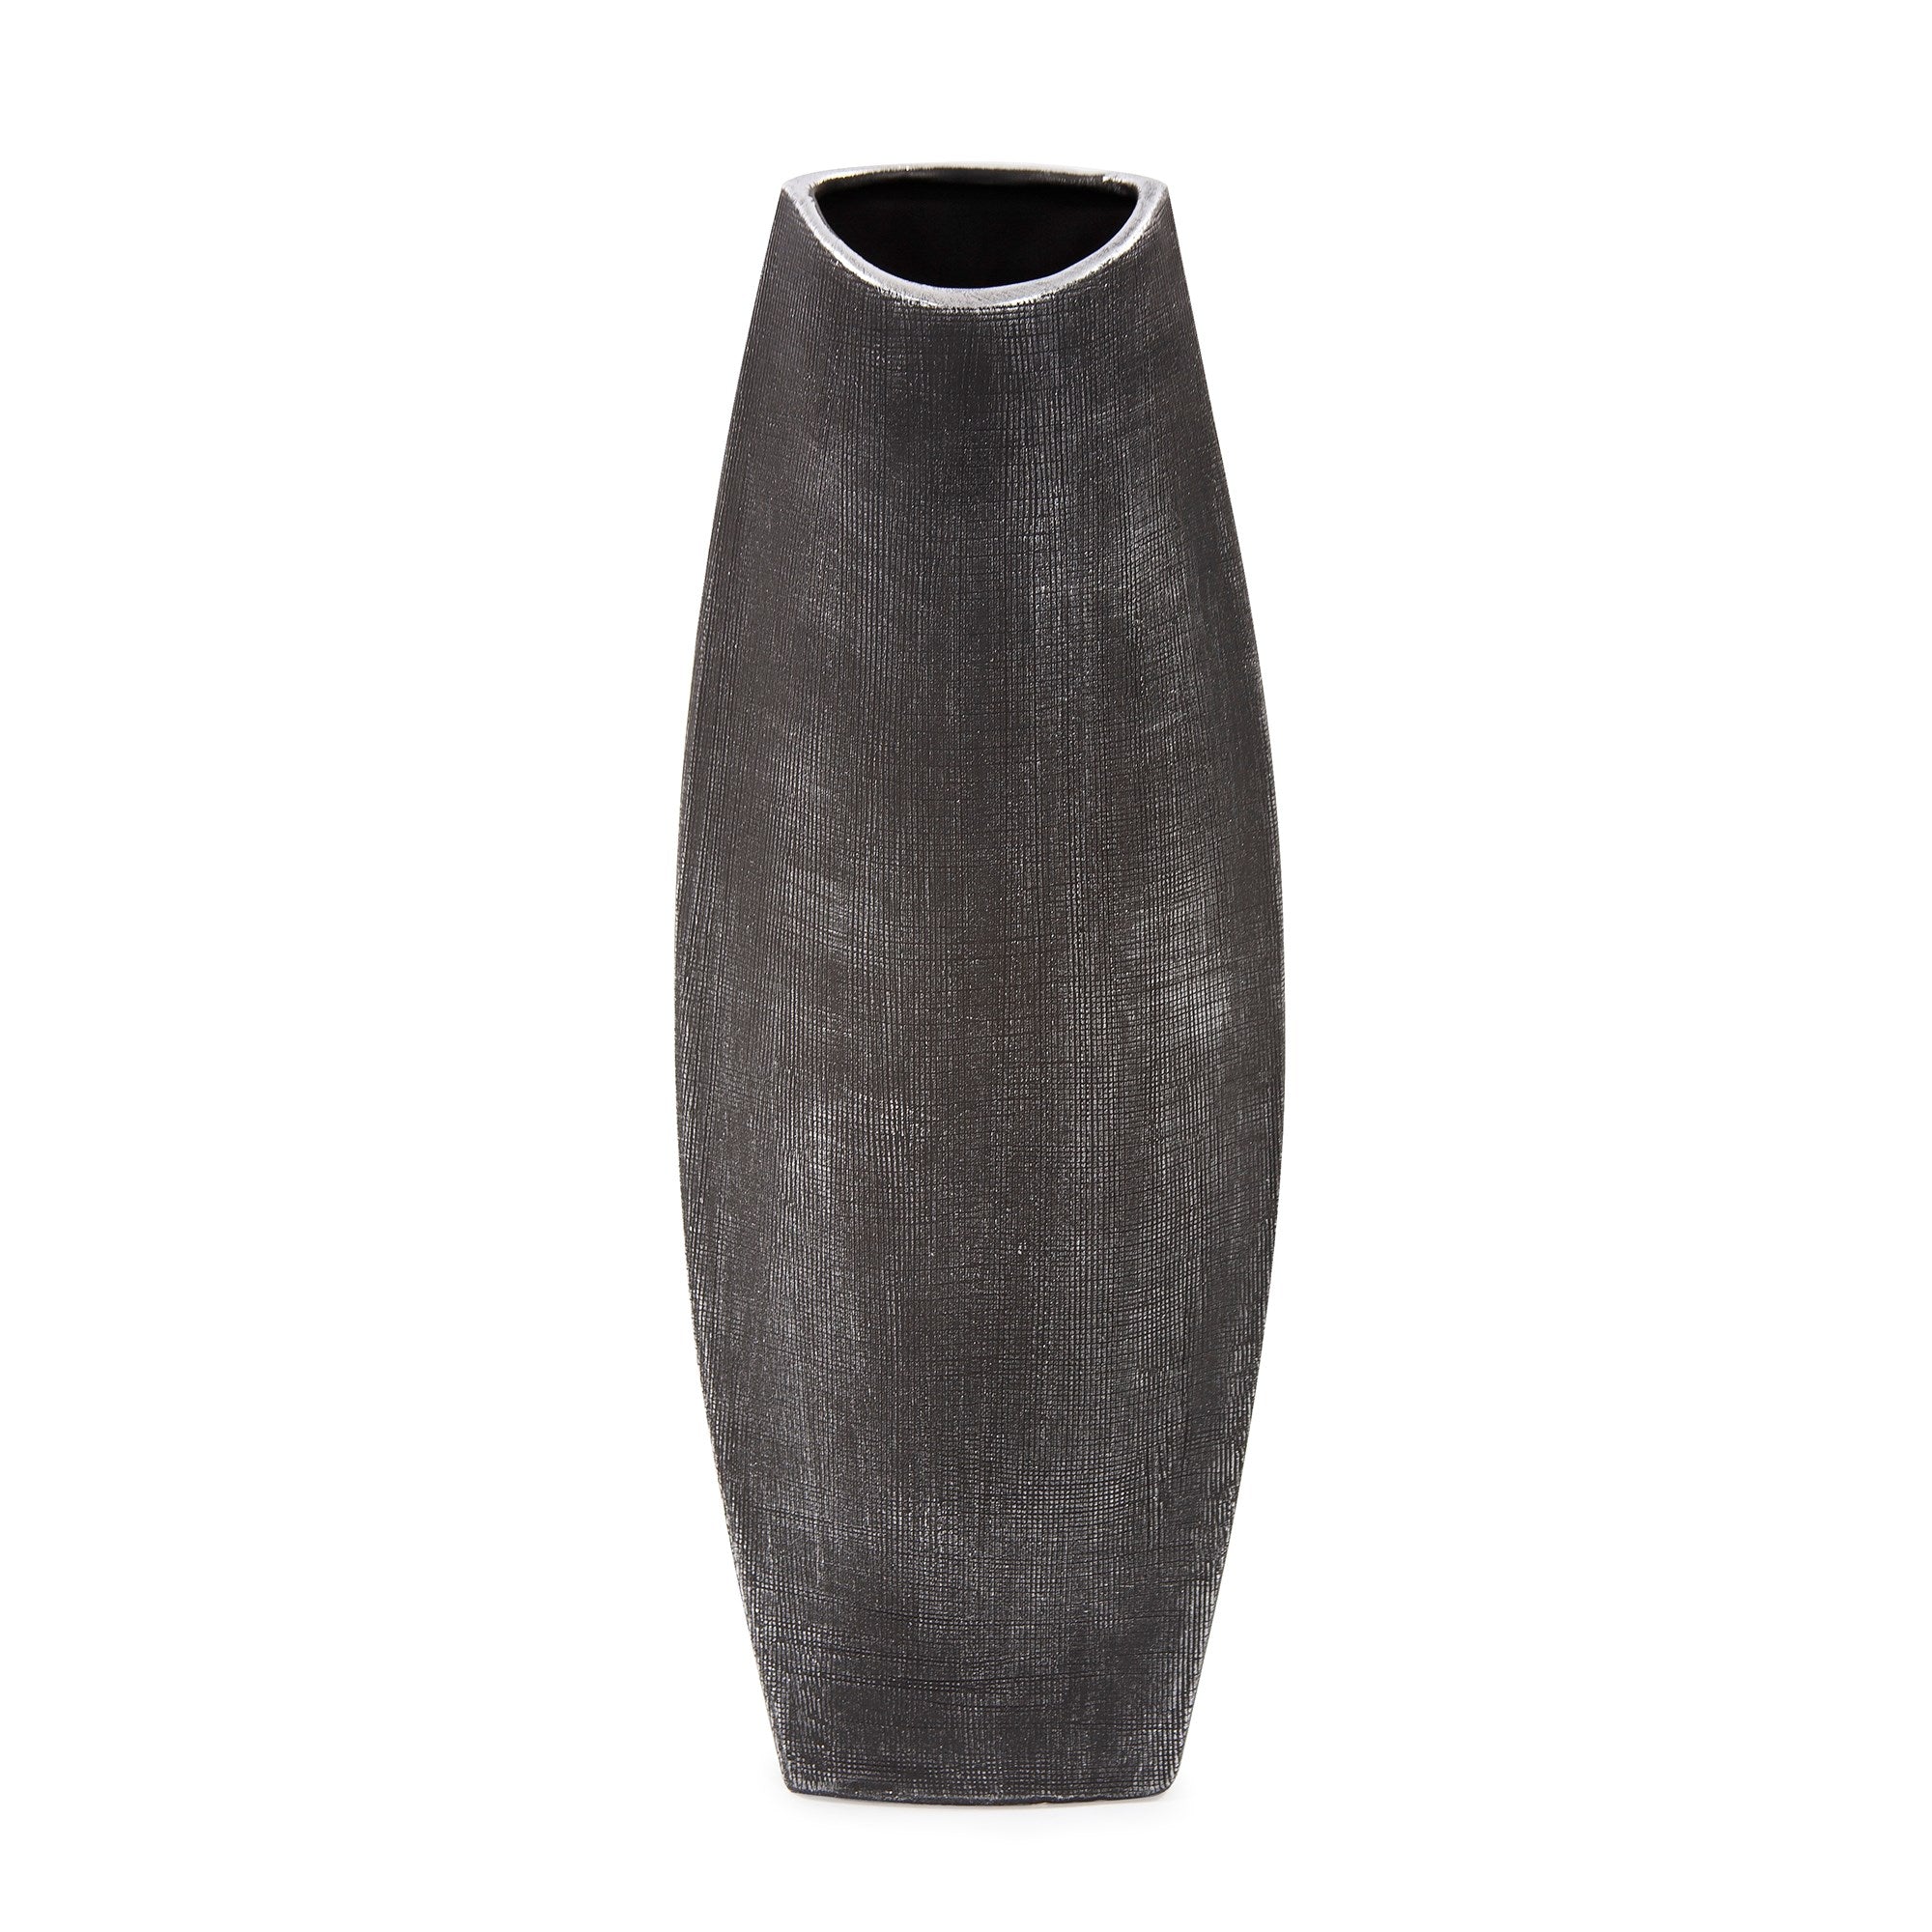 Textured Black Free Formed Ceramic Vase, Tall